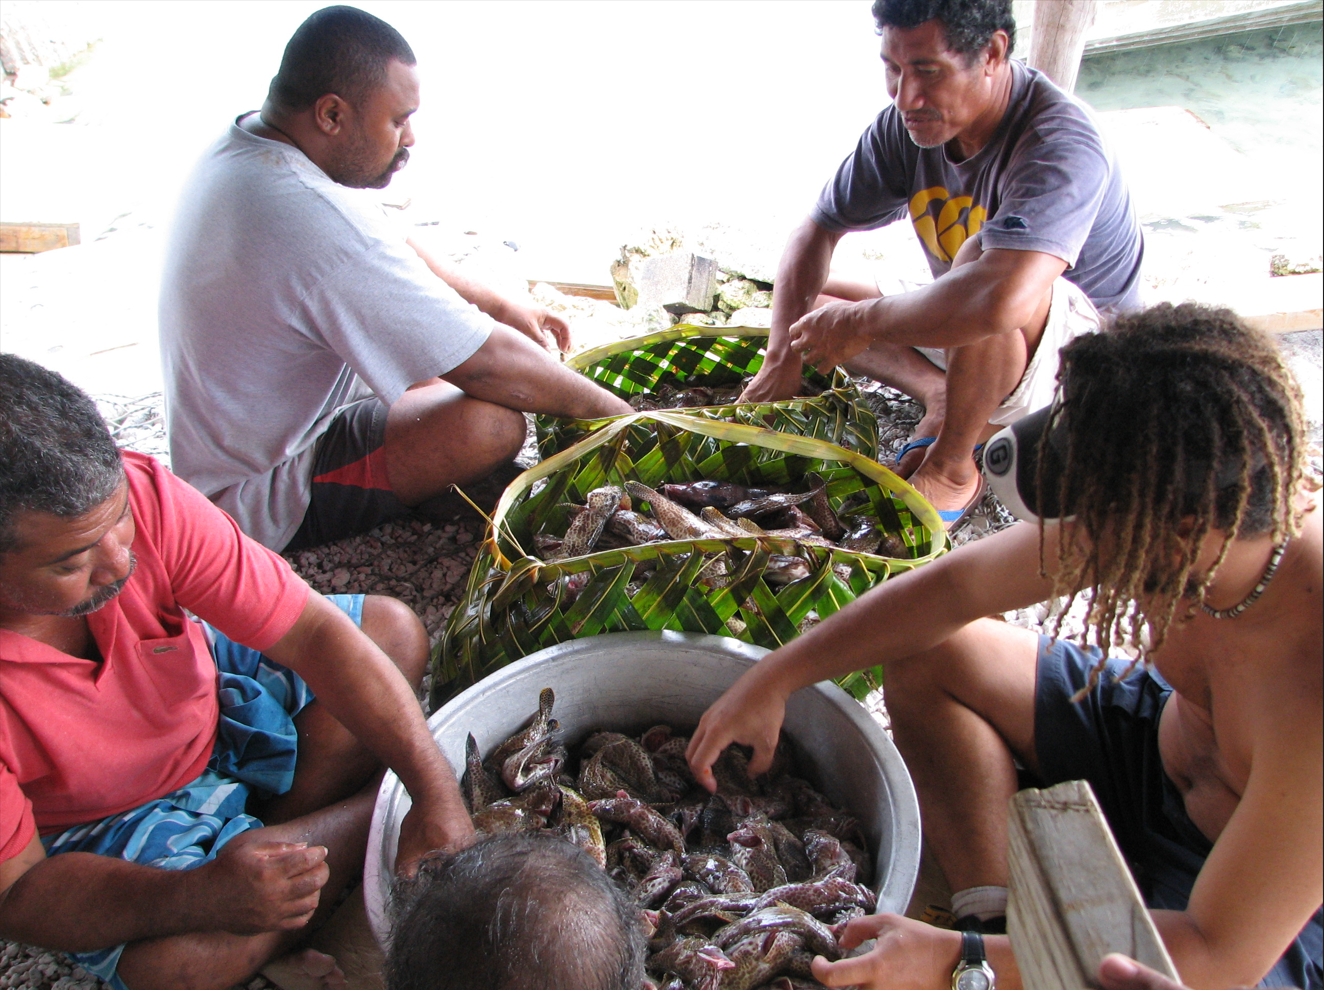 Post harvesting in Tokelau